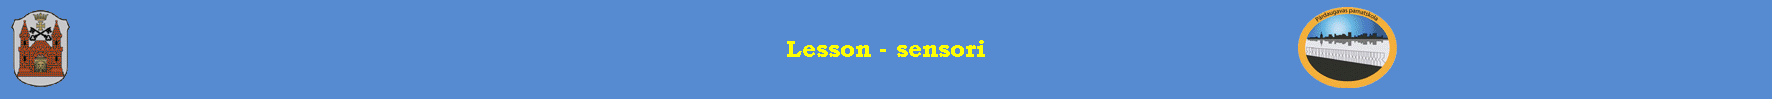 Lesson - sensori